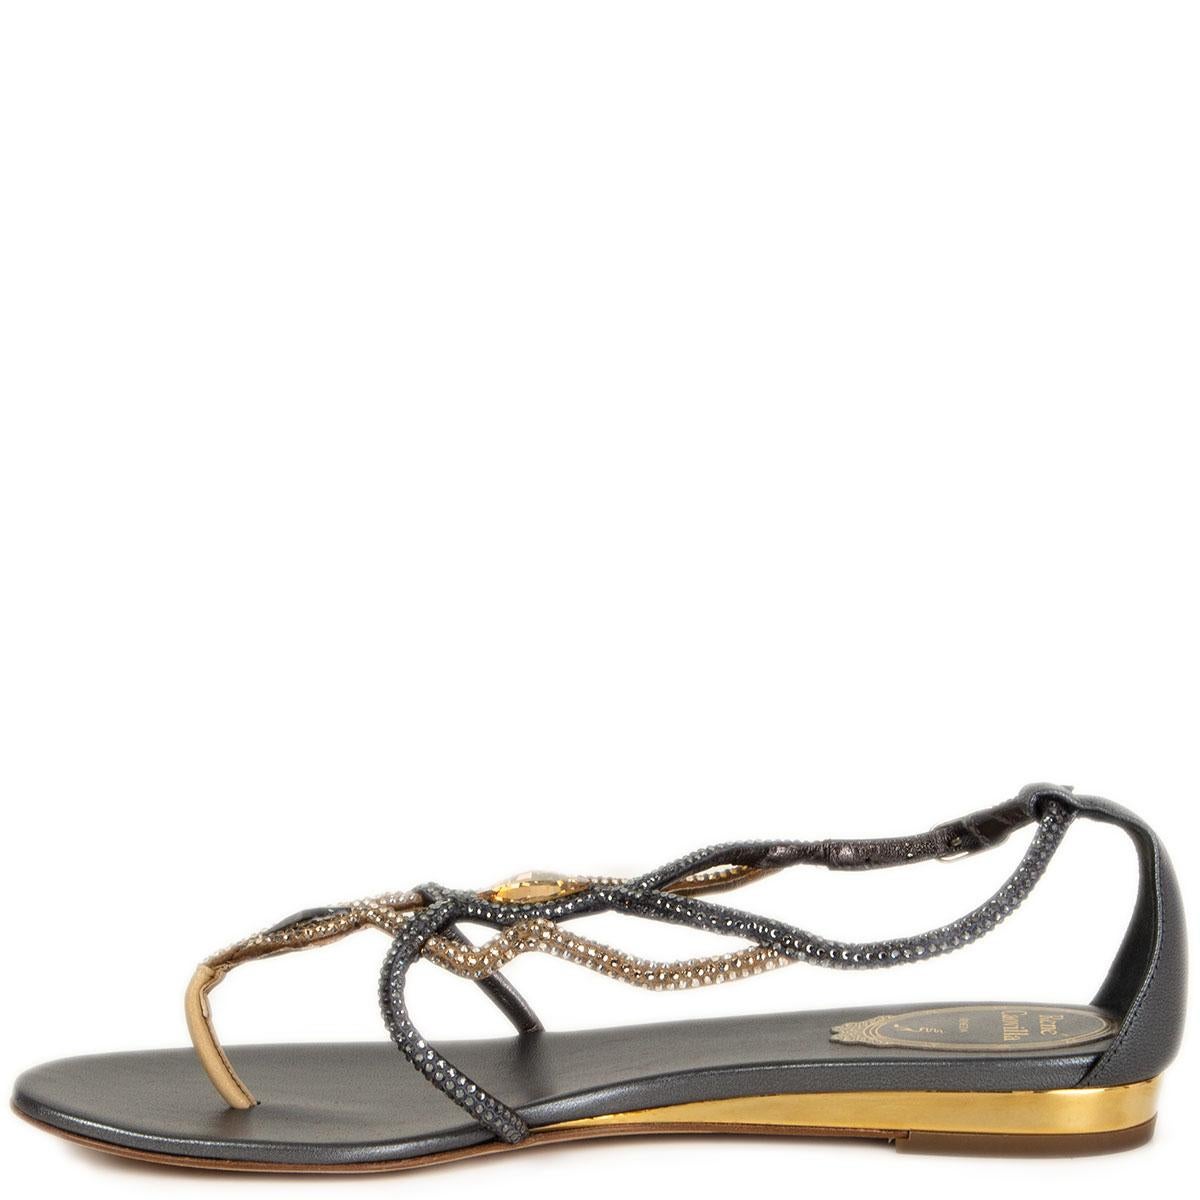 RENE CAOVILLA schwarz-goldene flache Sandalen mit RHINESTONE-Verzierung, Schuhe 36,5 (Grau) im Angebot